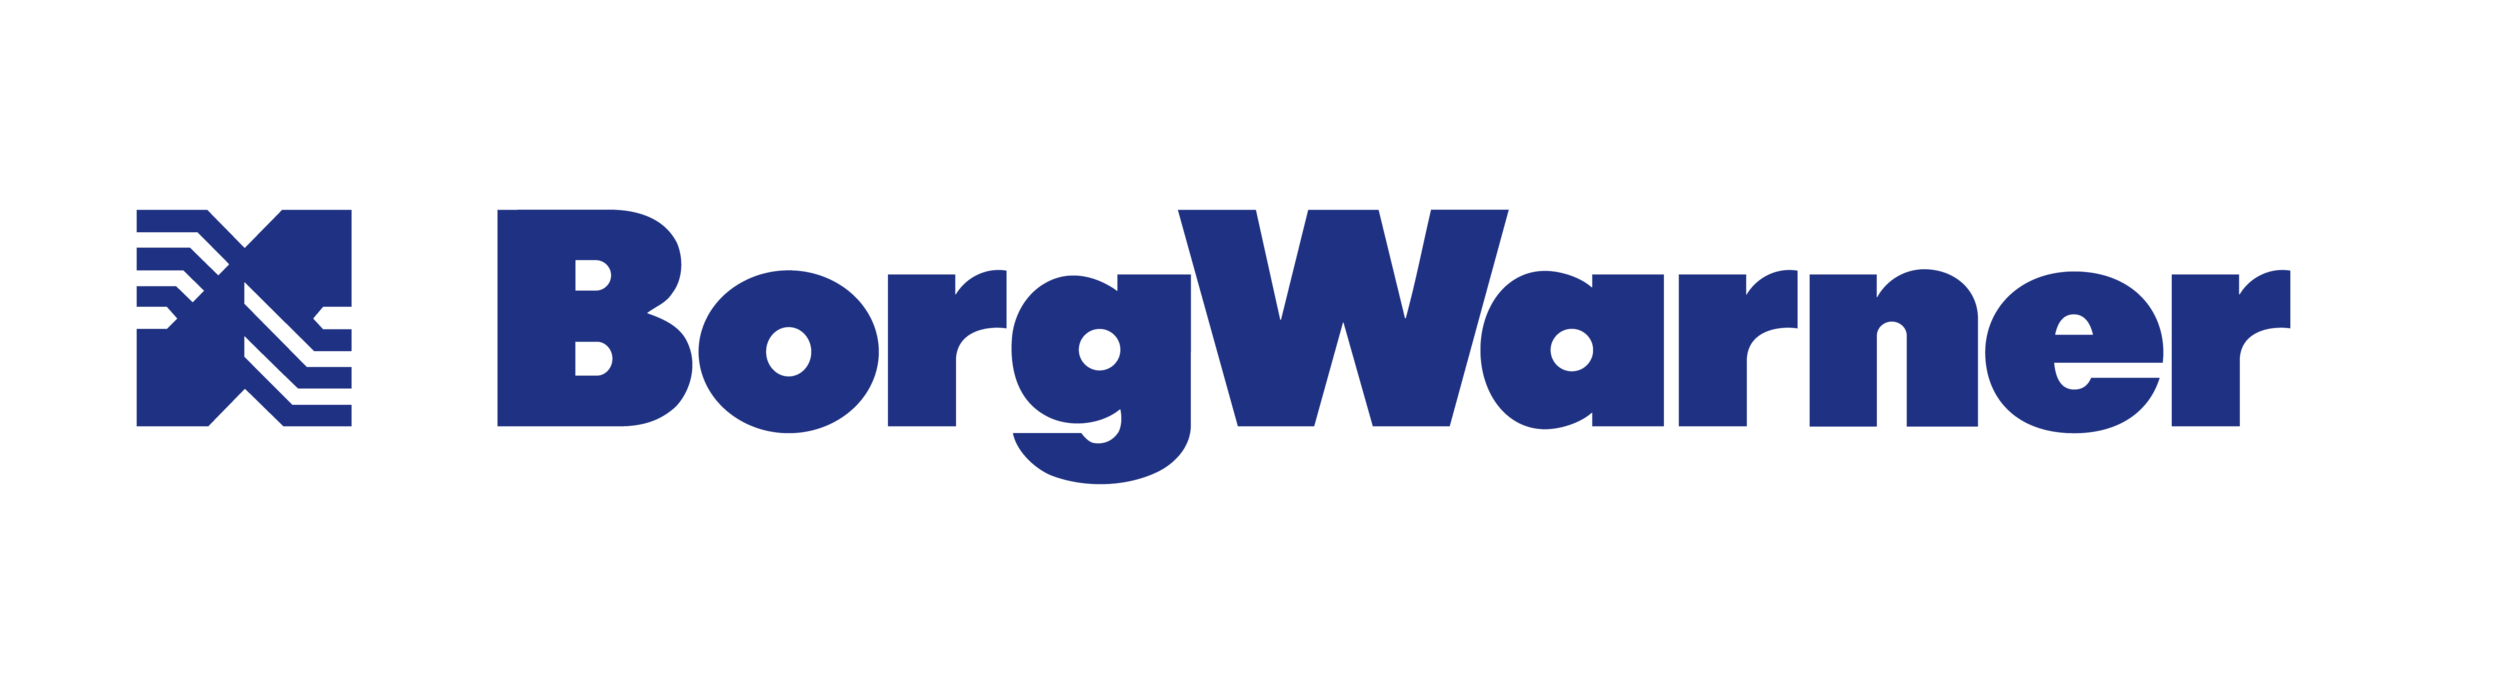 bw-logo.png